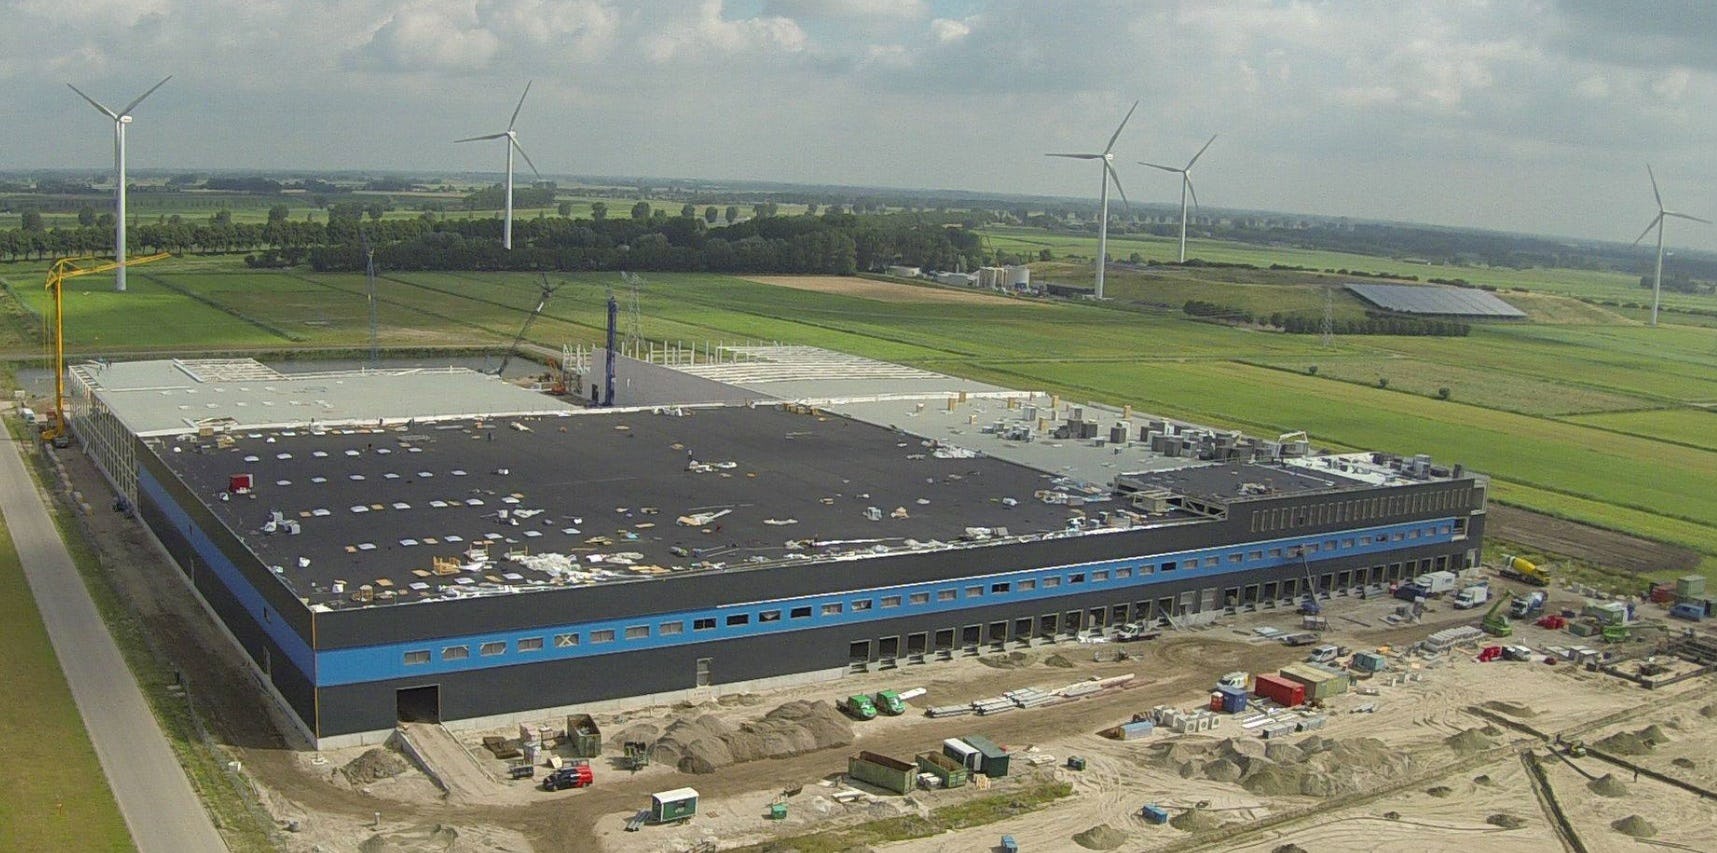 Webwinkel bol.com sorteert voor op een uitbreiding van zijn nieuwe nog in aanbouw zijnde distributiecentrum in Waalwijk. Volgens het Brabants Dagblad heeft bol.com een optie genomen op een naastgelegen perceel van 8,3 hectare. Foto: ZND Nedicom